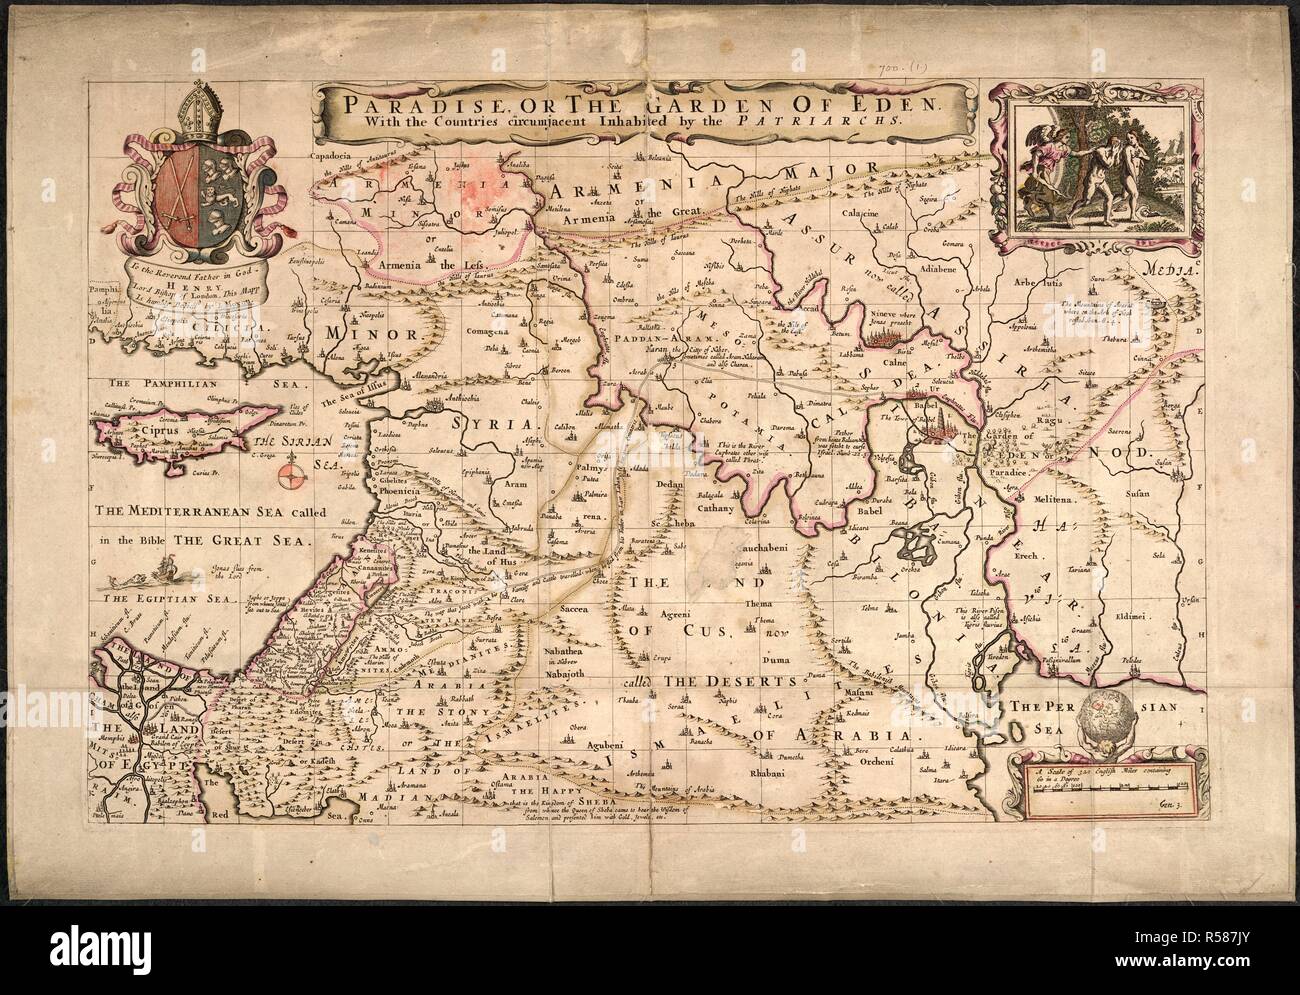 Paradies oder der Garten Eden. Paradies oder den Garten Eden mit den Ländern. London, 1690. Quelle: Karten.* 700. (1). Sprache: Englisch. Autor: Moxon, Joseph. Stockfoto